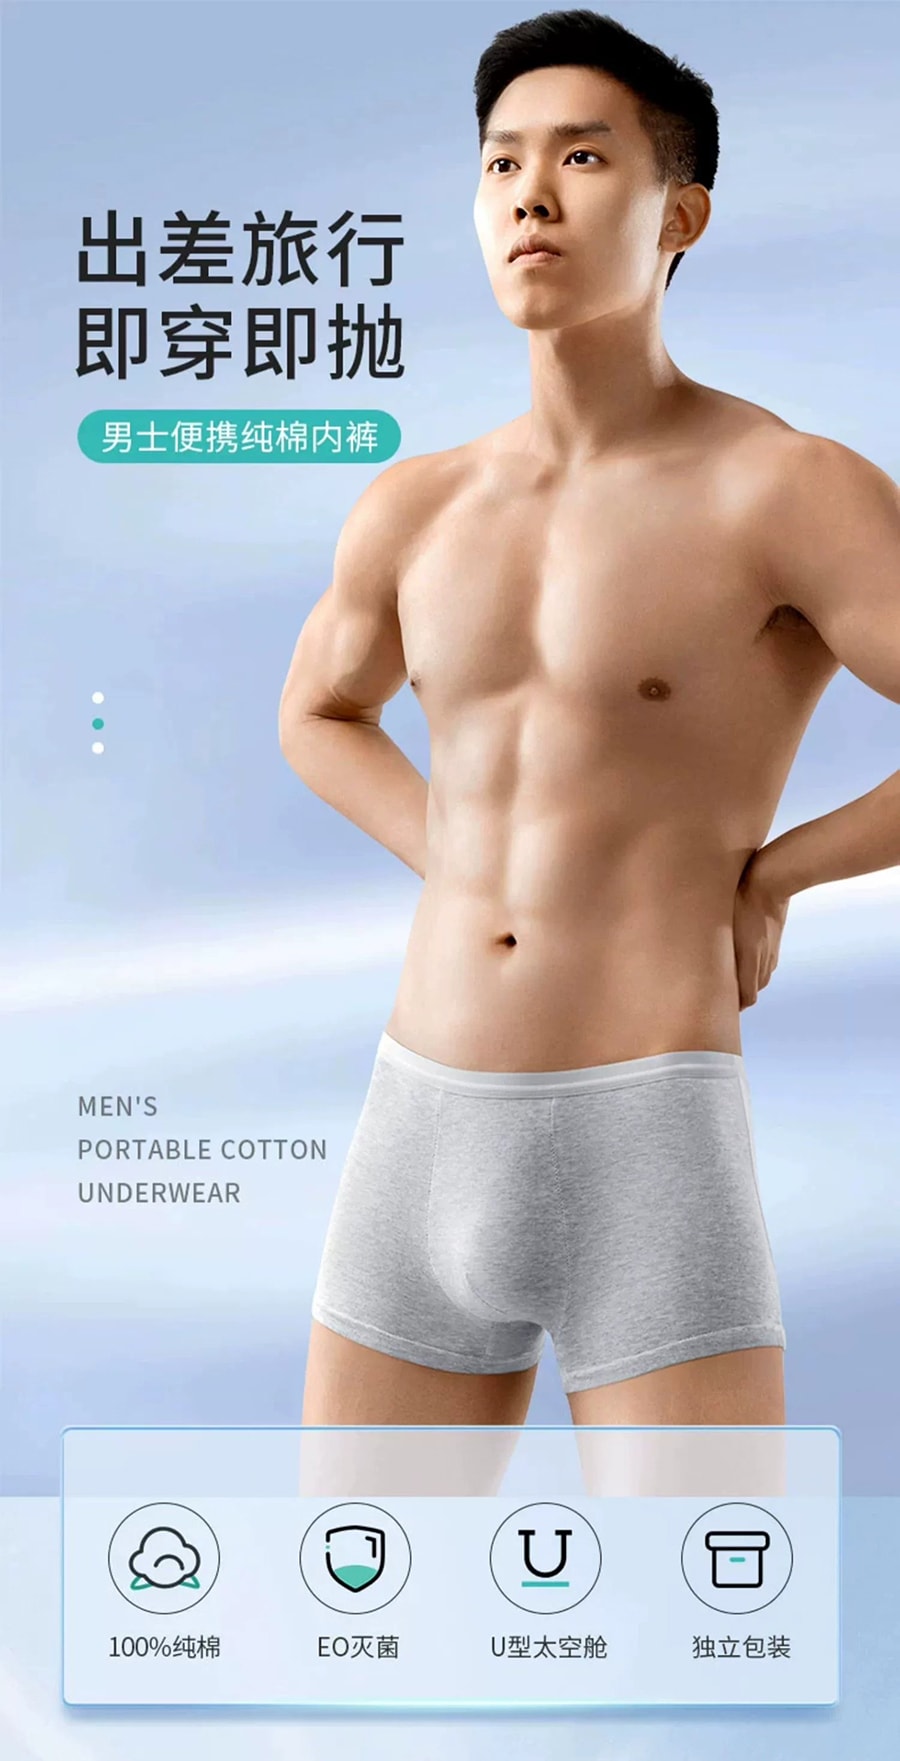 欧亿姿 方便舒适一次性男性内裤 灰色 XXL 3条装无需清洗 不仅仅是方便